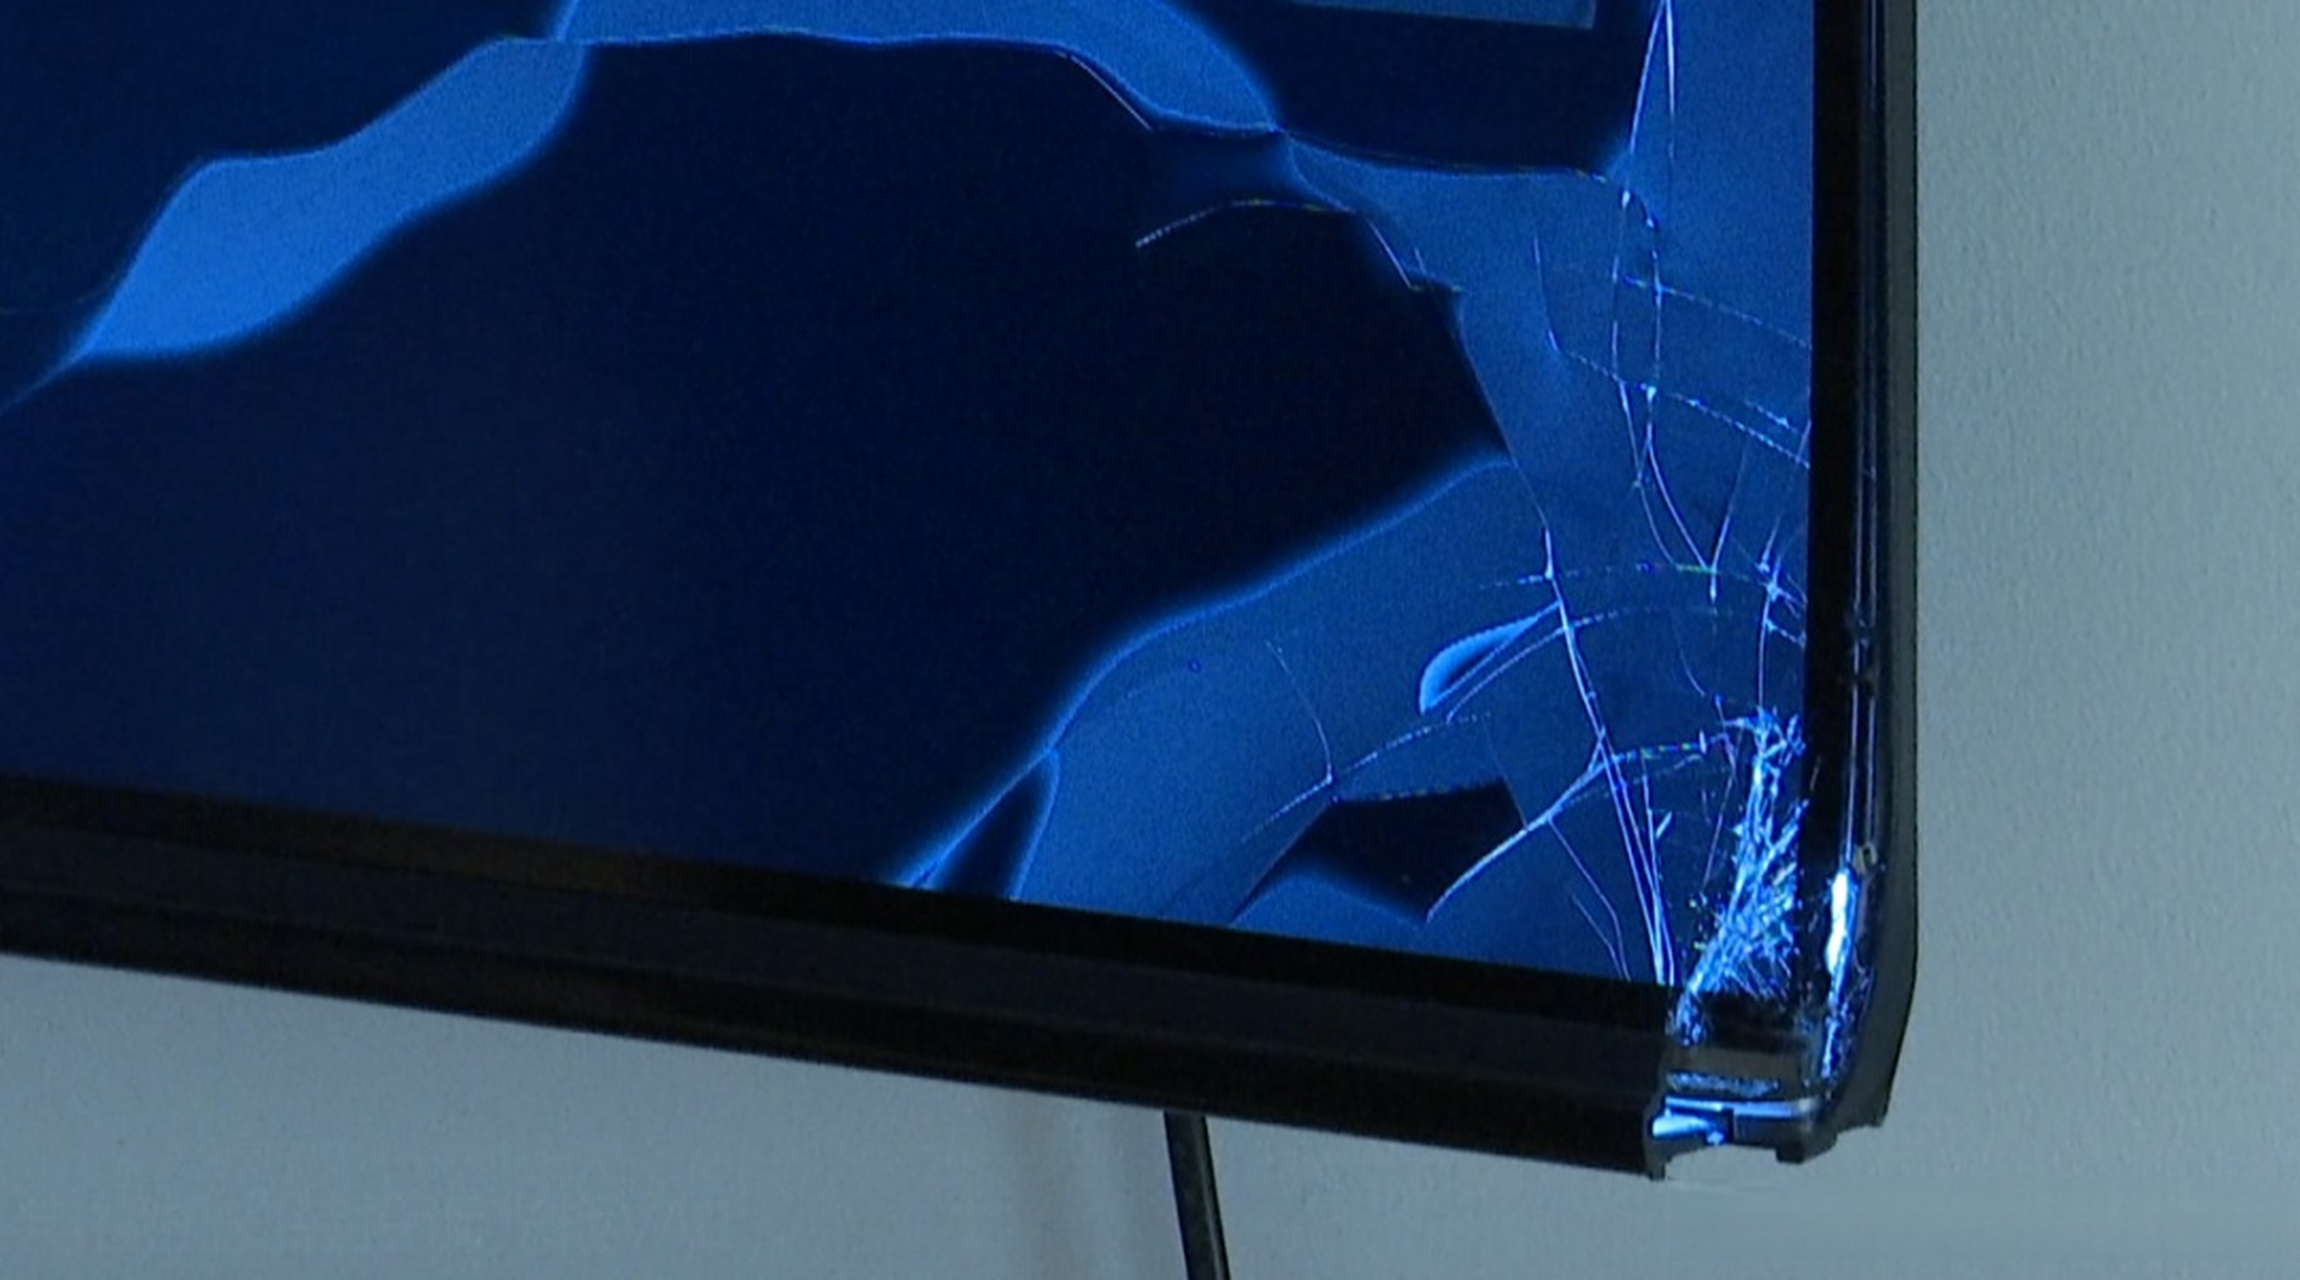 【家乐福买的电视机 挂上墙一个多月就摔碎了 谁该负责?